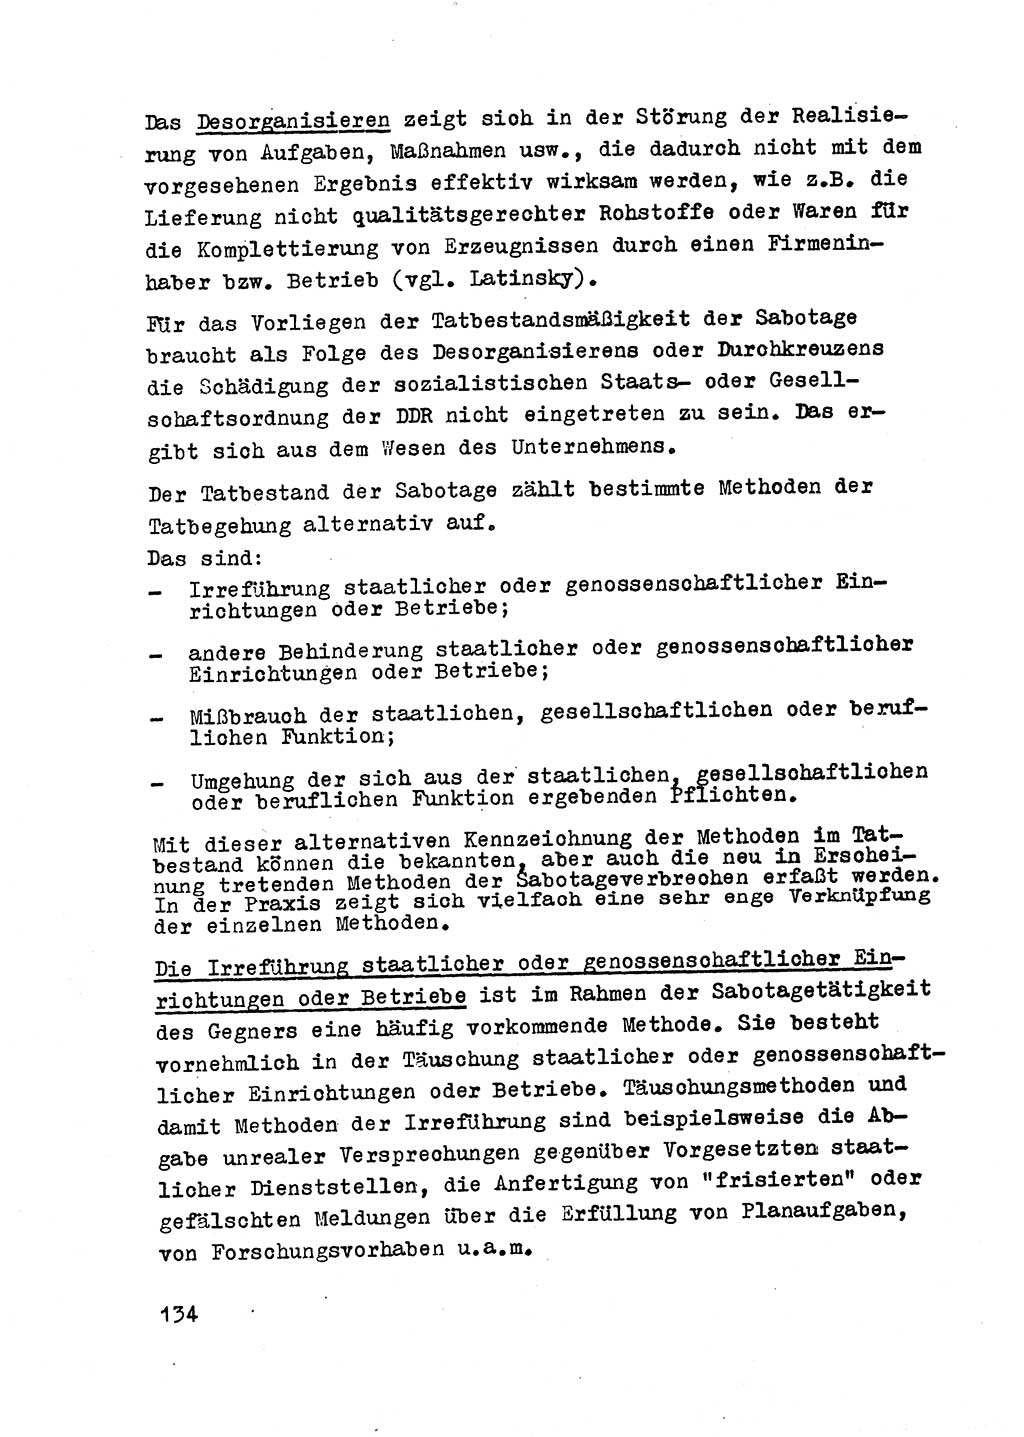 Strafrecht der DDR (Deutsche Demokratische Republik), Besonderer Teil, Lehrmaterial, Heft 2 1969, Seite 134 (Strafr. DDR BT Lehrmat. H. 2 1969, S. 134)